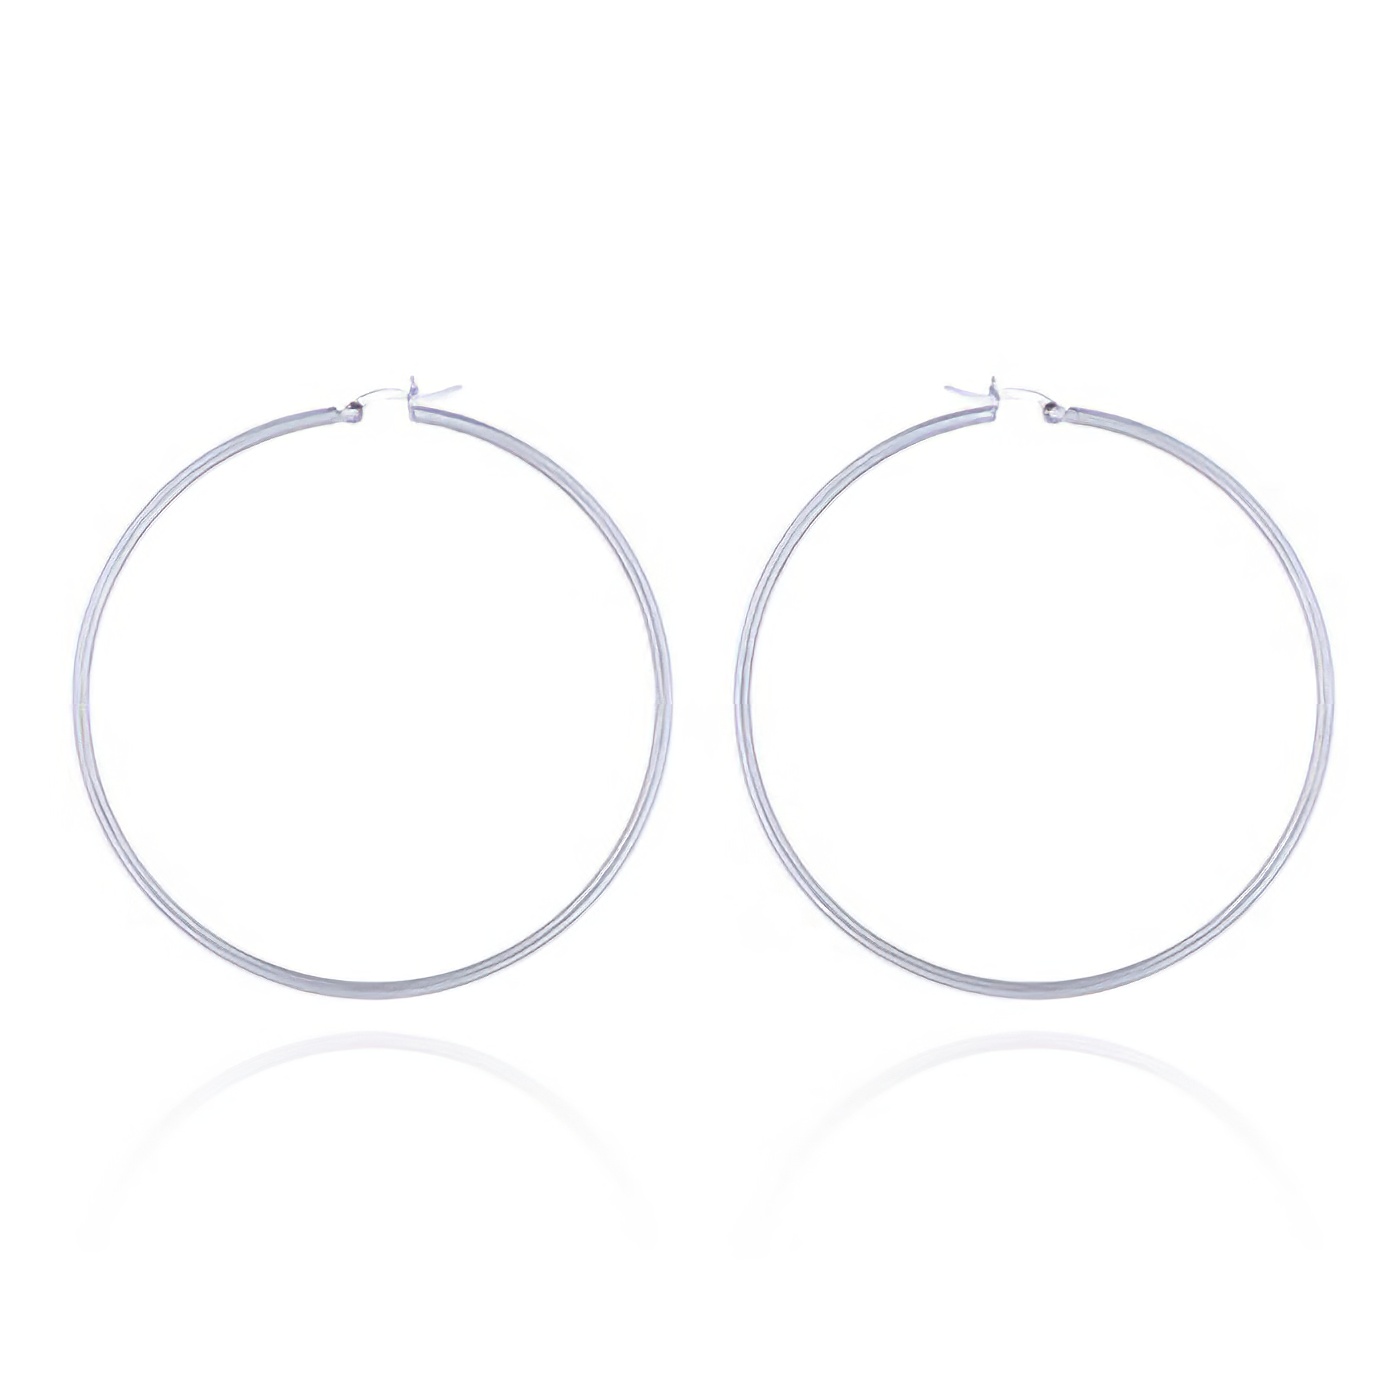 70mm Round Silver Hoop Earrings by BeYindi 